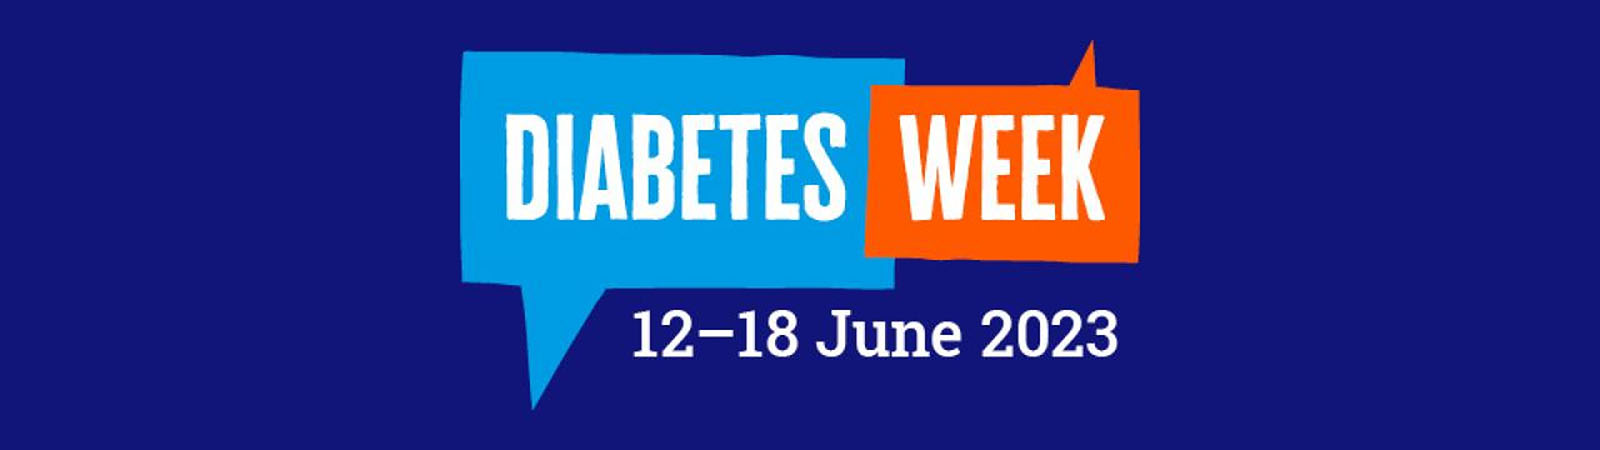 Diabetes week